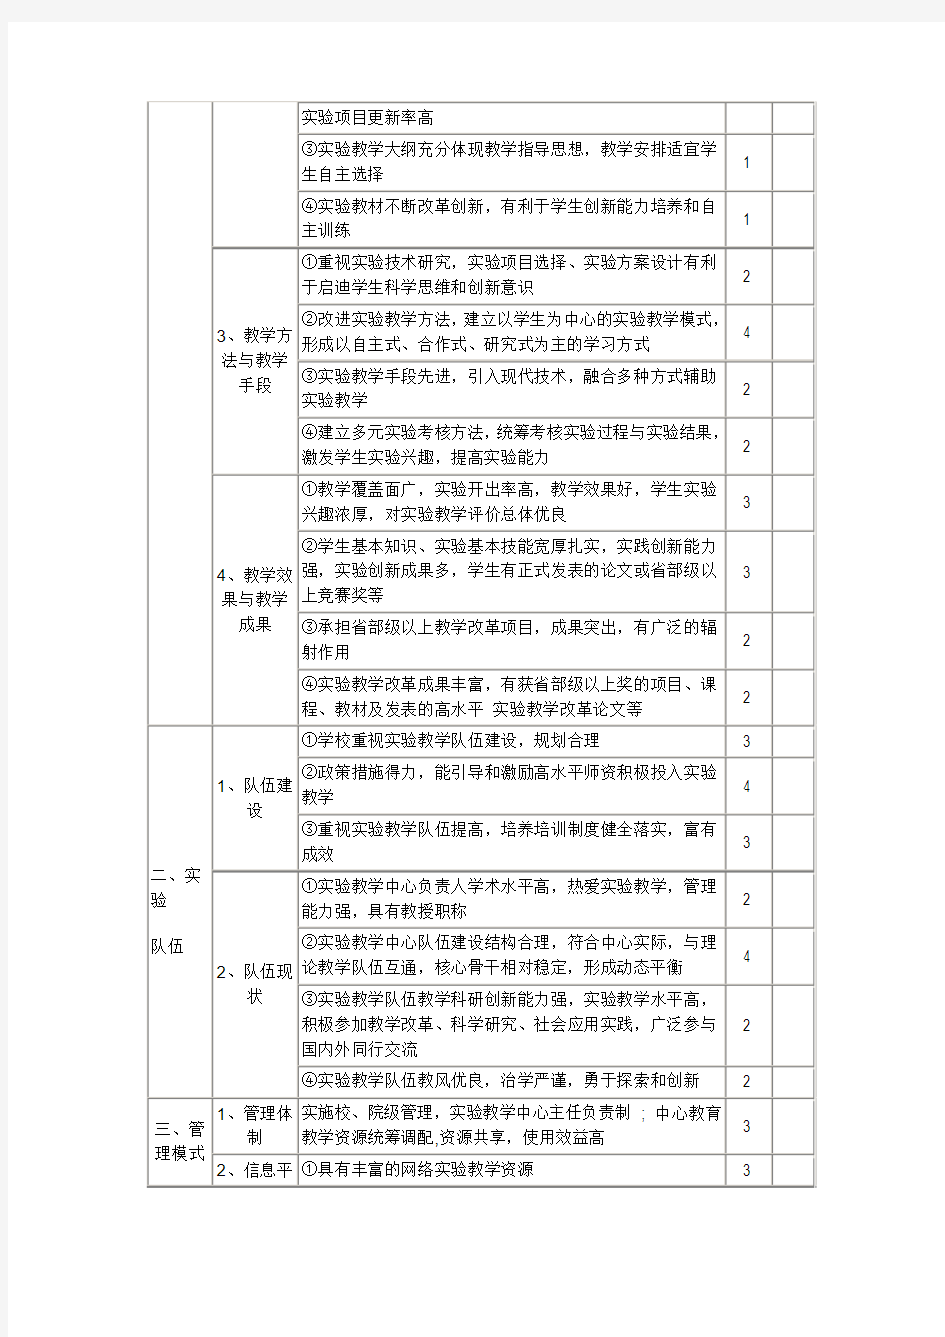 广东省高等学校实验教学示范中心评审指标体系(试行)